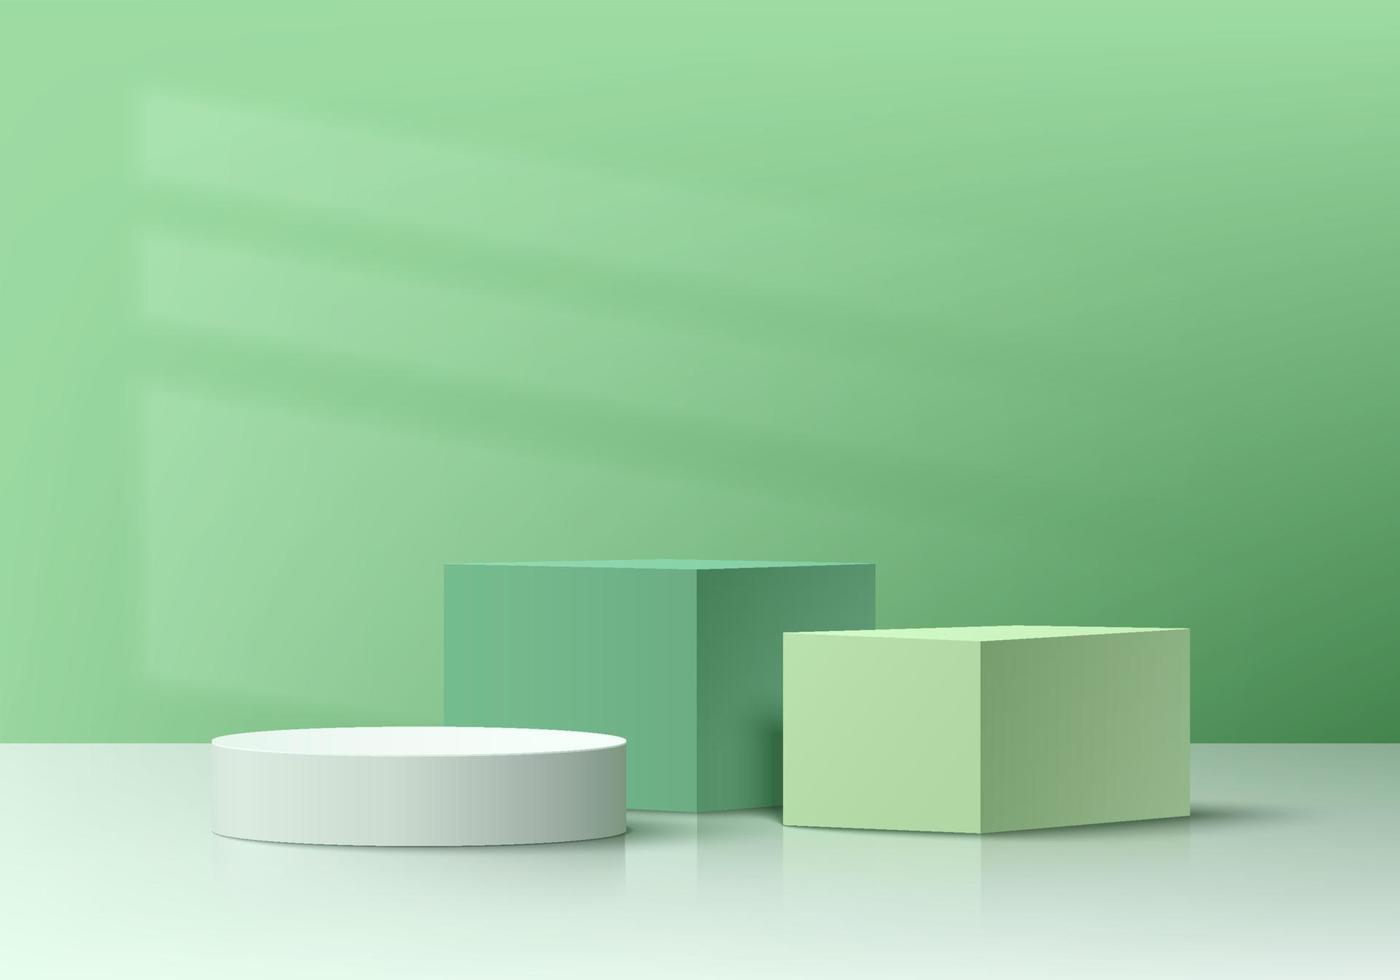 cubo 3d realista branco, verde e pódio de pedestal de cilindro com fundo de sombra de janela. cena de parede mínima para vitrine de palco de produtos, exibição de promoção. vector design de grupo de formas geométricas.